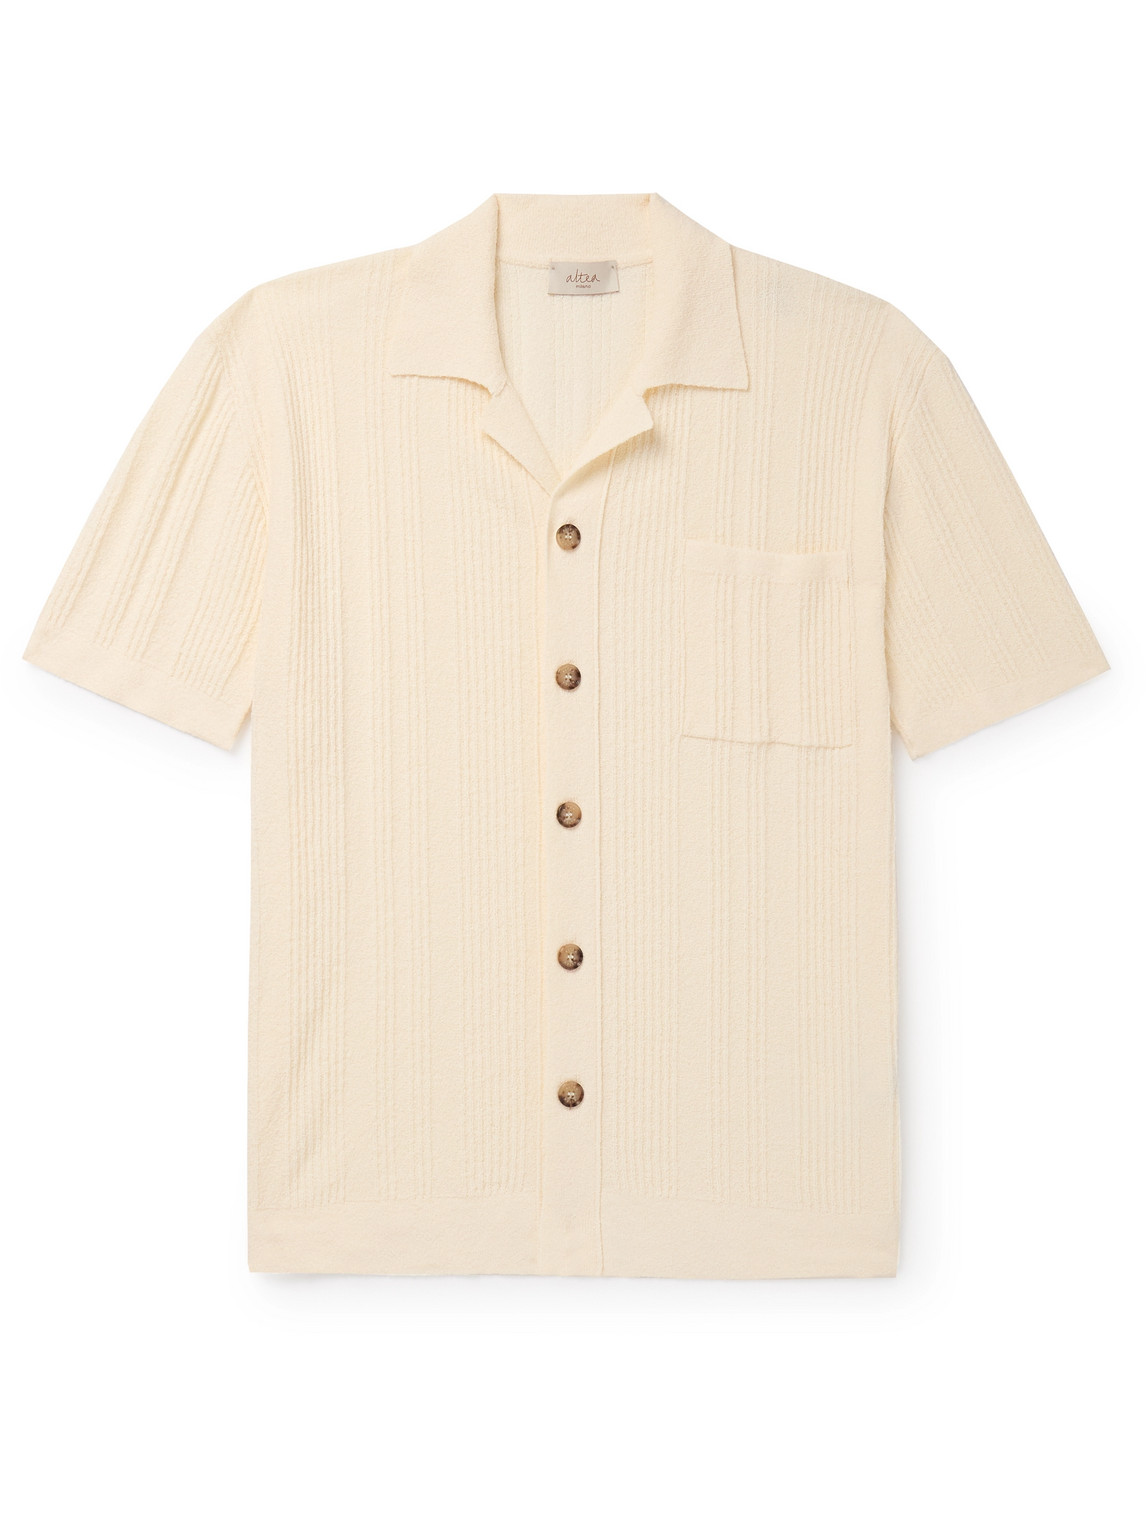 Altea - Slim-Fit Camp-Collar Ribbed Cotton-Blend Terry Shirt - Men - Neutrals - M von Altea